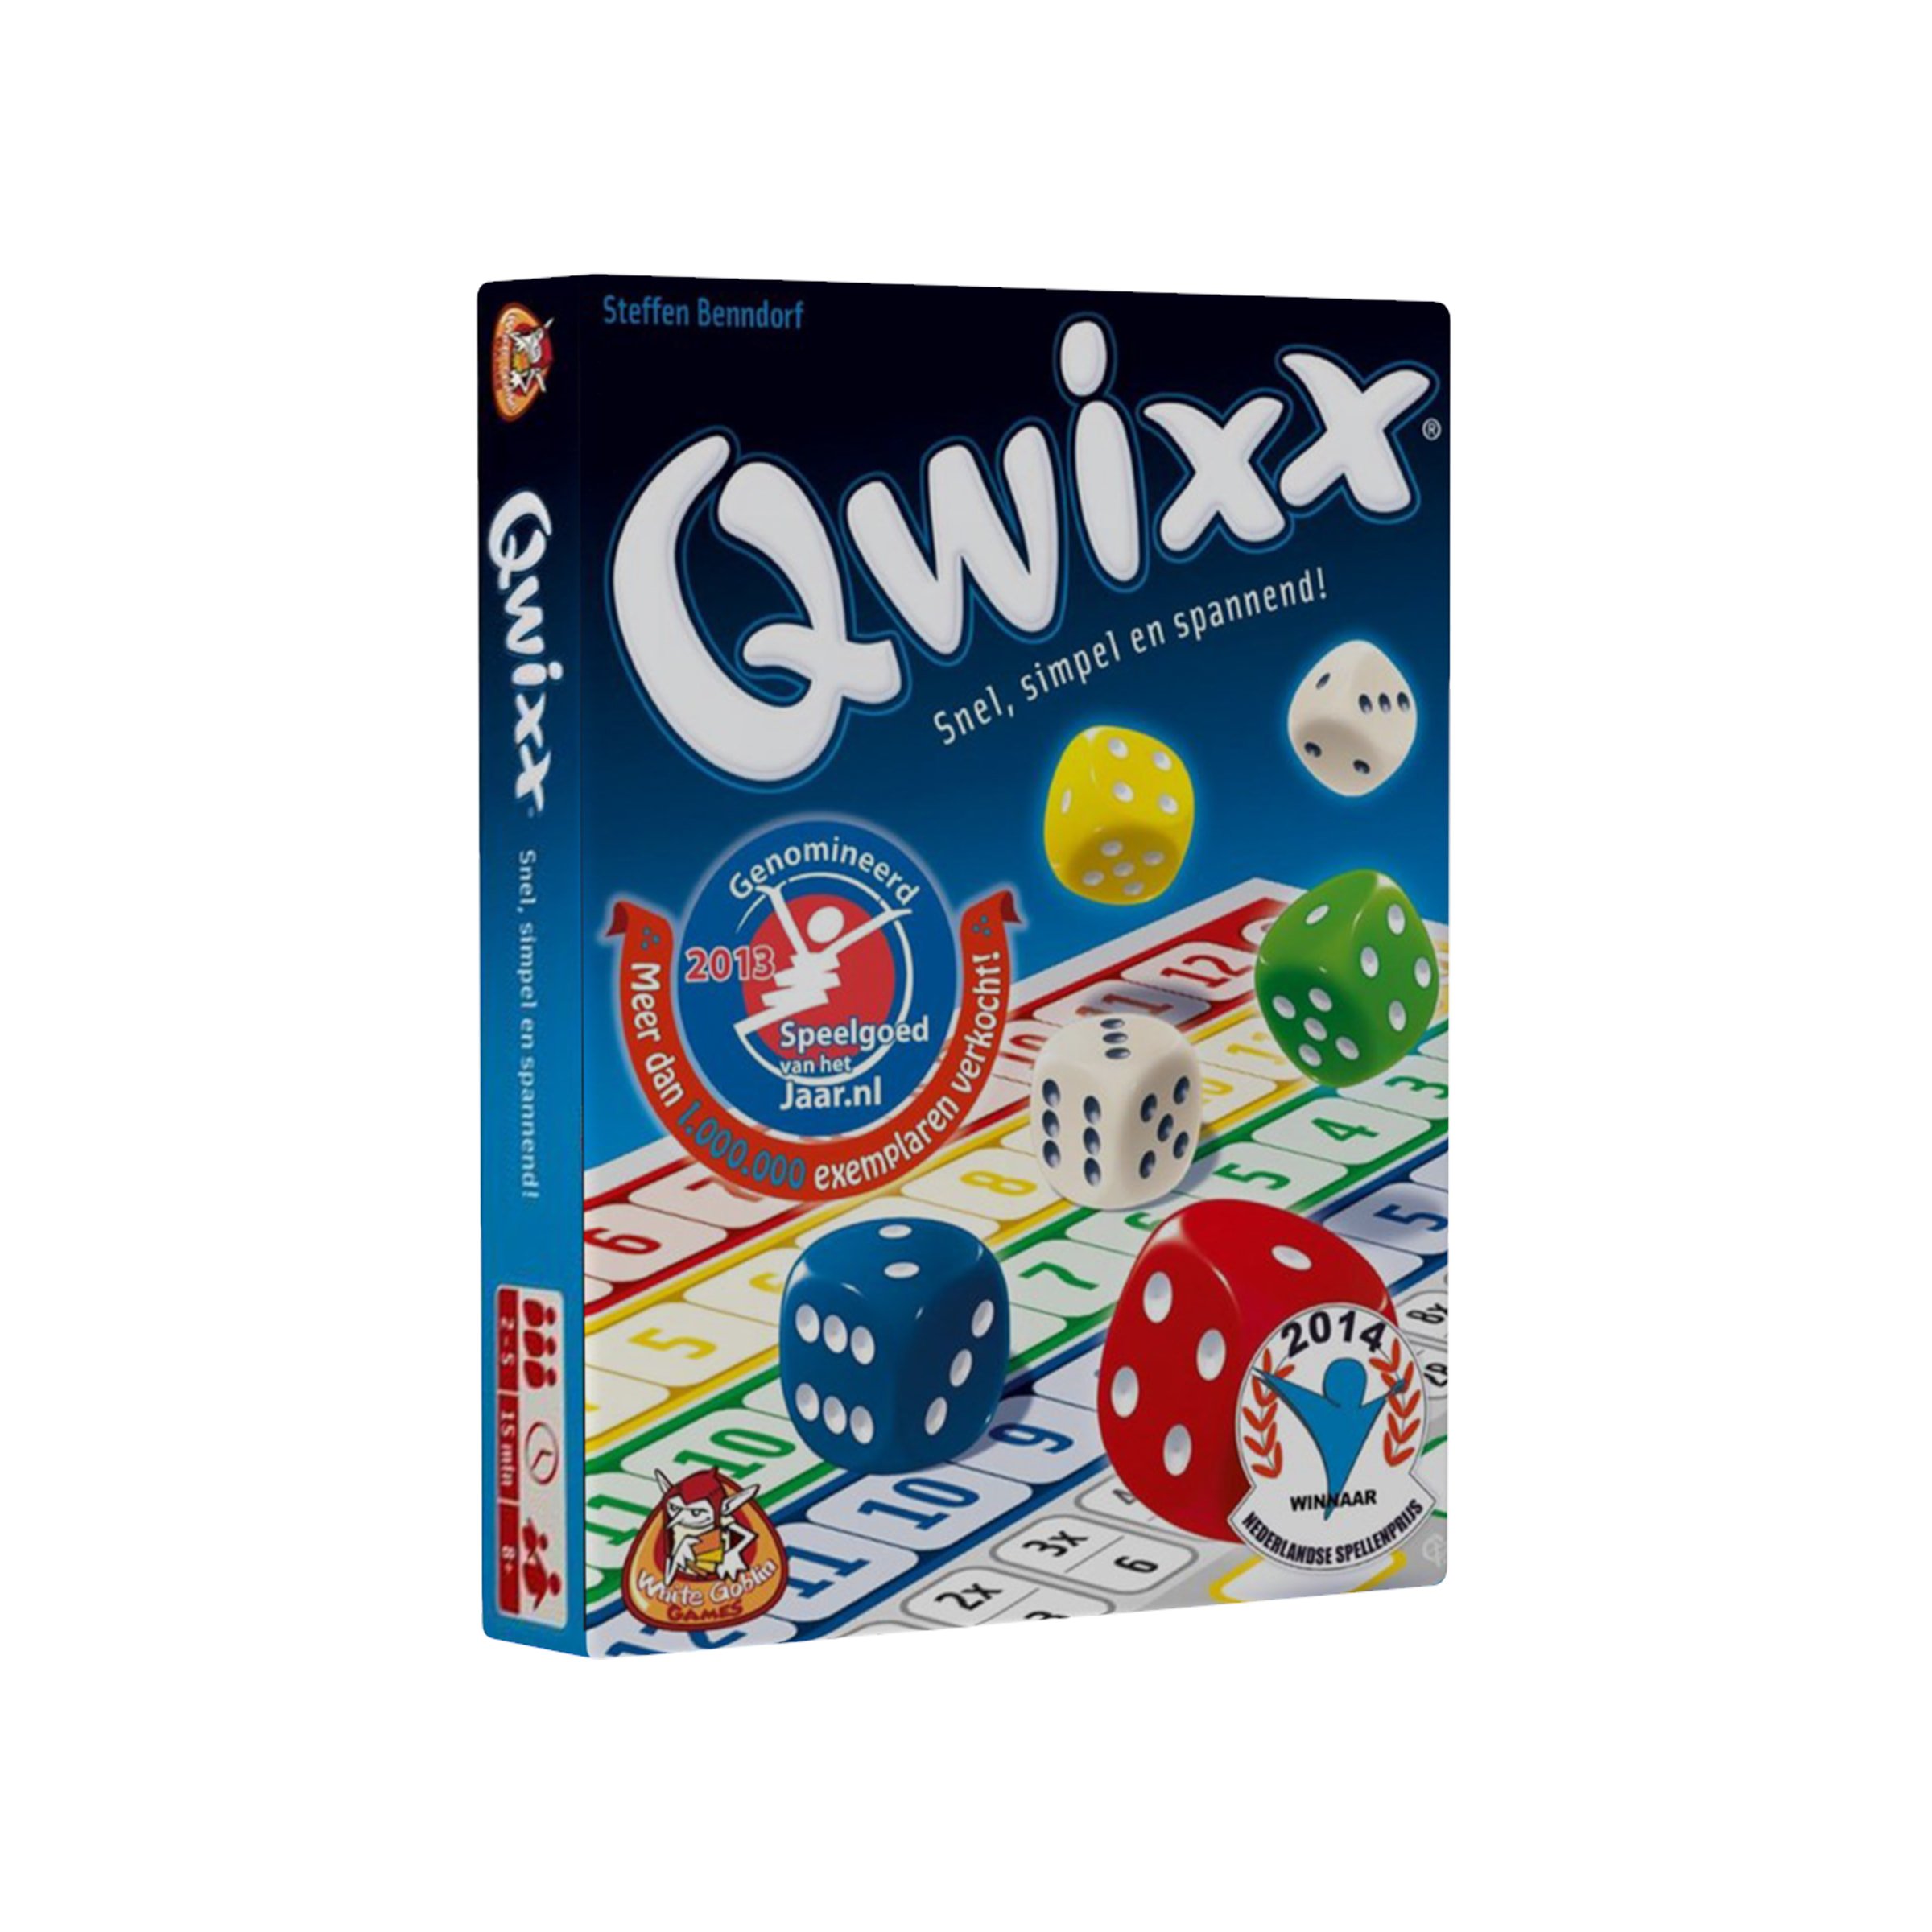 Mm Pedagogie fysiek Qwixx card game with printed packaging | PrintSimple